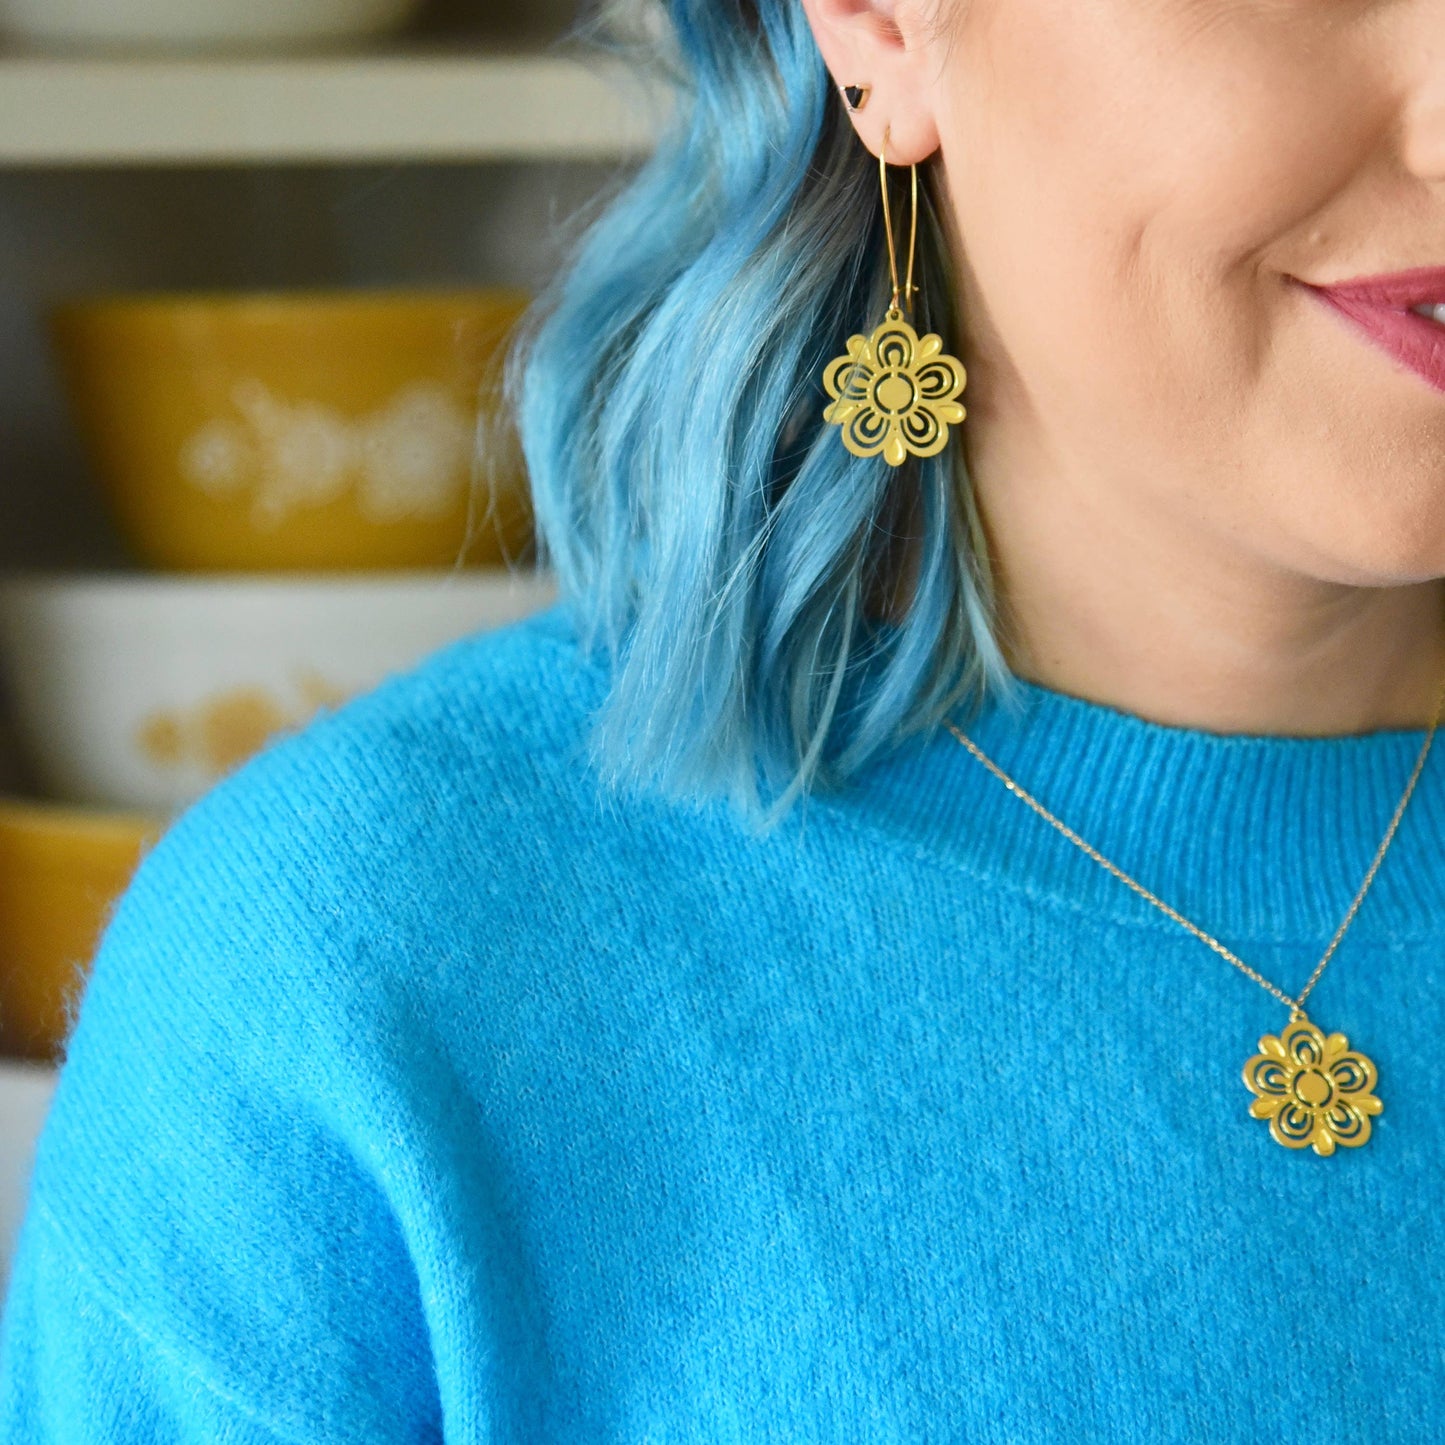 Retro Pyrex Flower Earrings | Butterfly Gold Pattern